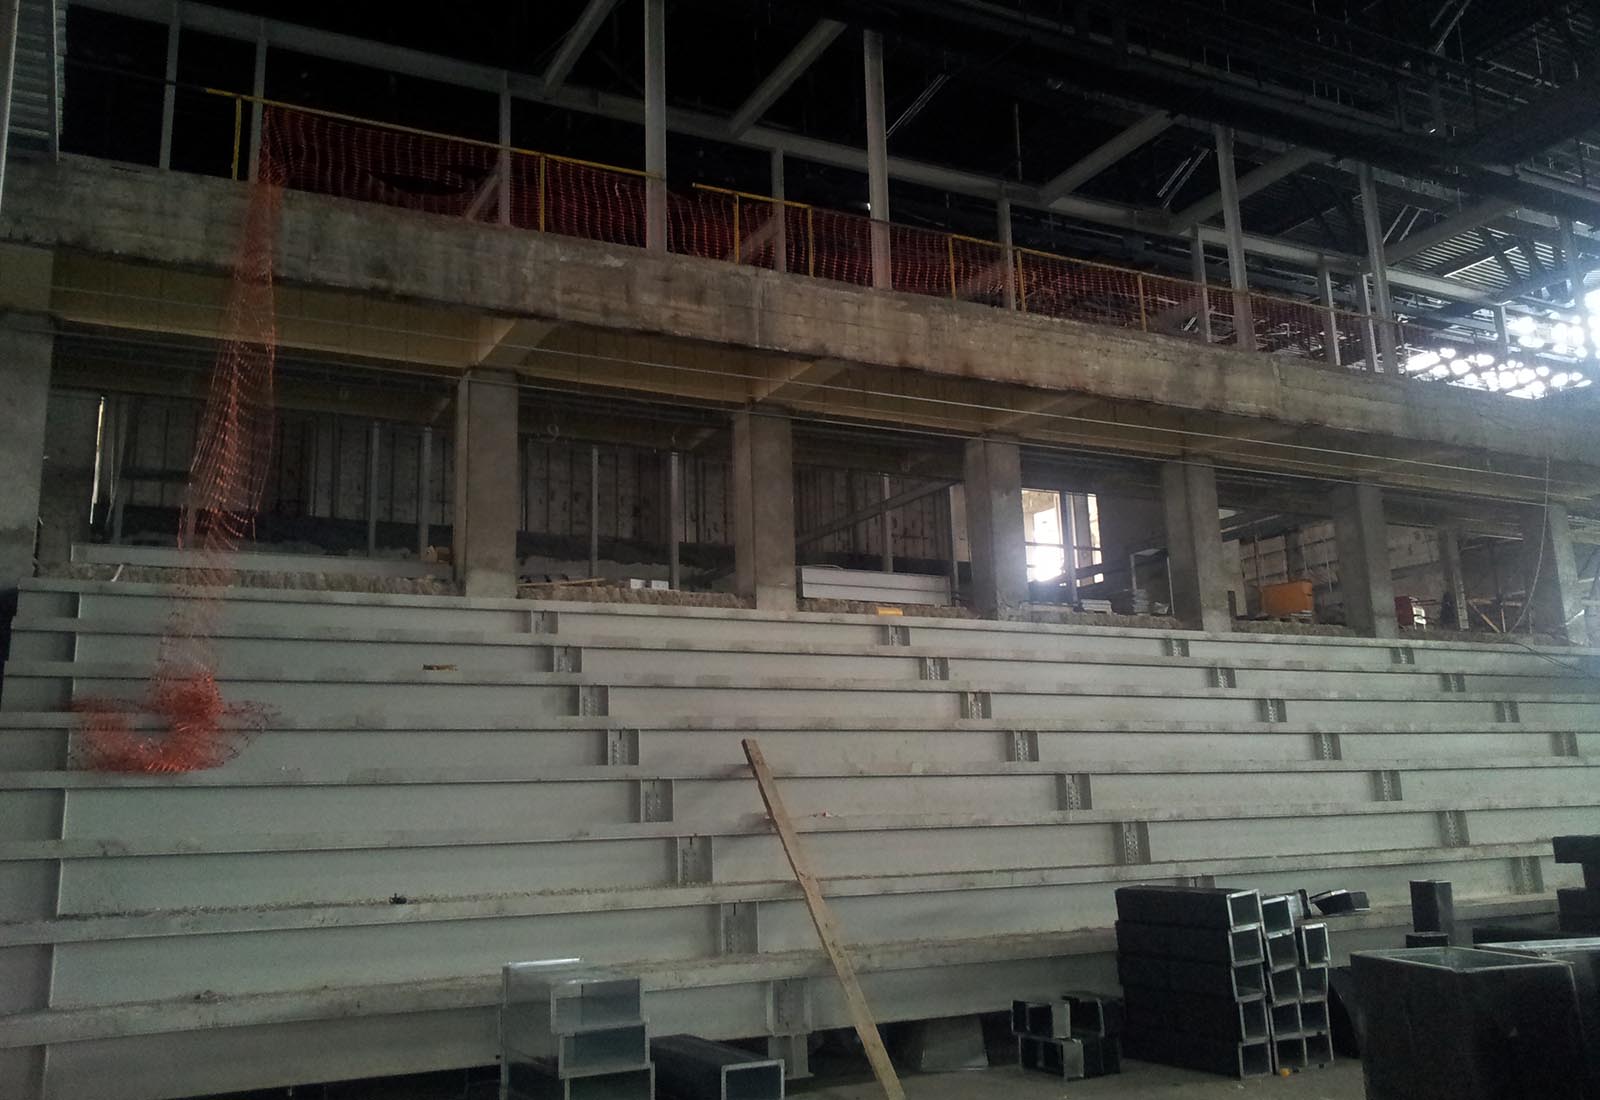 Baku sport hall - Costruzione della tribuna nord